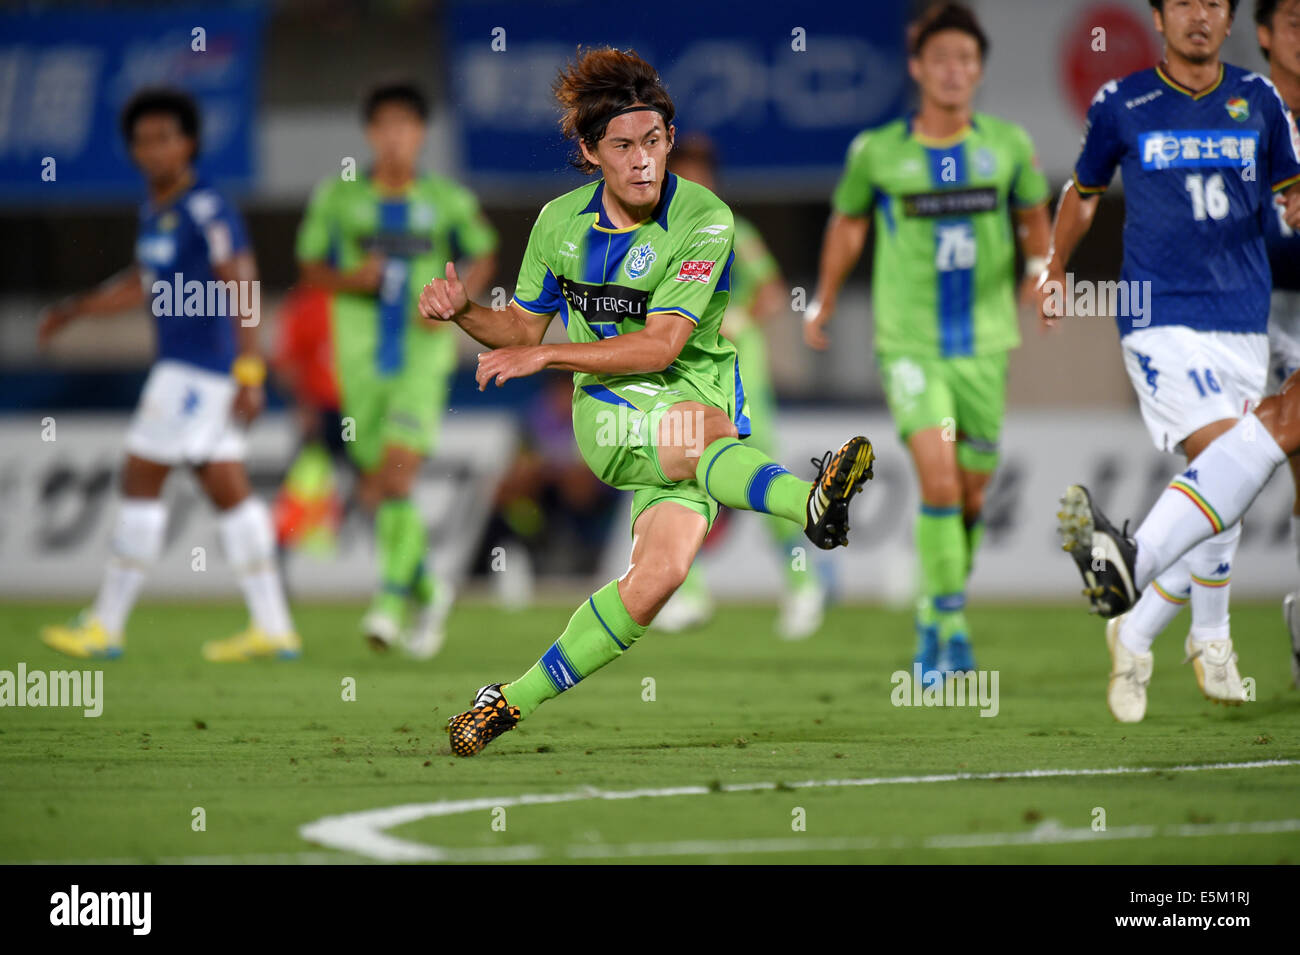 Daisuke Kikuchi Bellmare August 3 14 Football Soccer 14 J League Division 2 Match Between Shonan